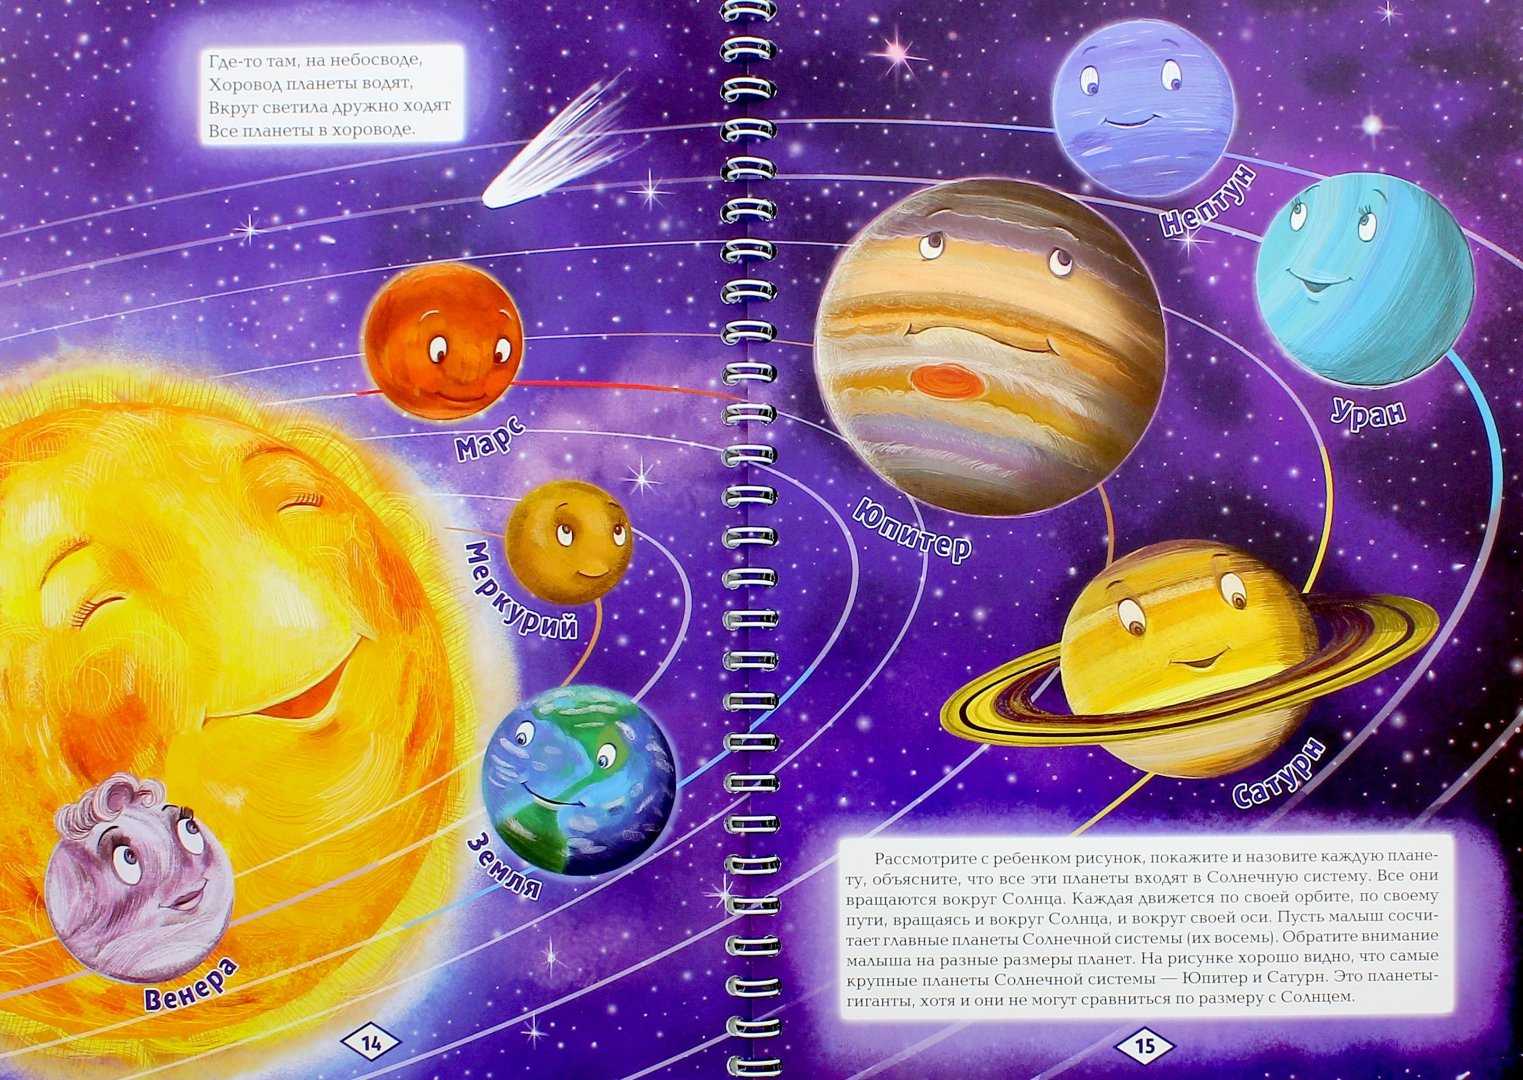 Детские стихи про космос, планеты, звезды, созвездия, кометы, астрономию   | материнство - беременность, роды, питание, воспитание